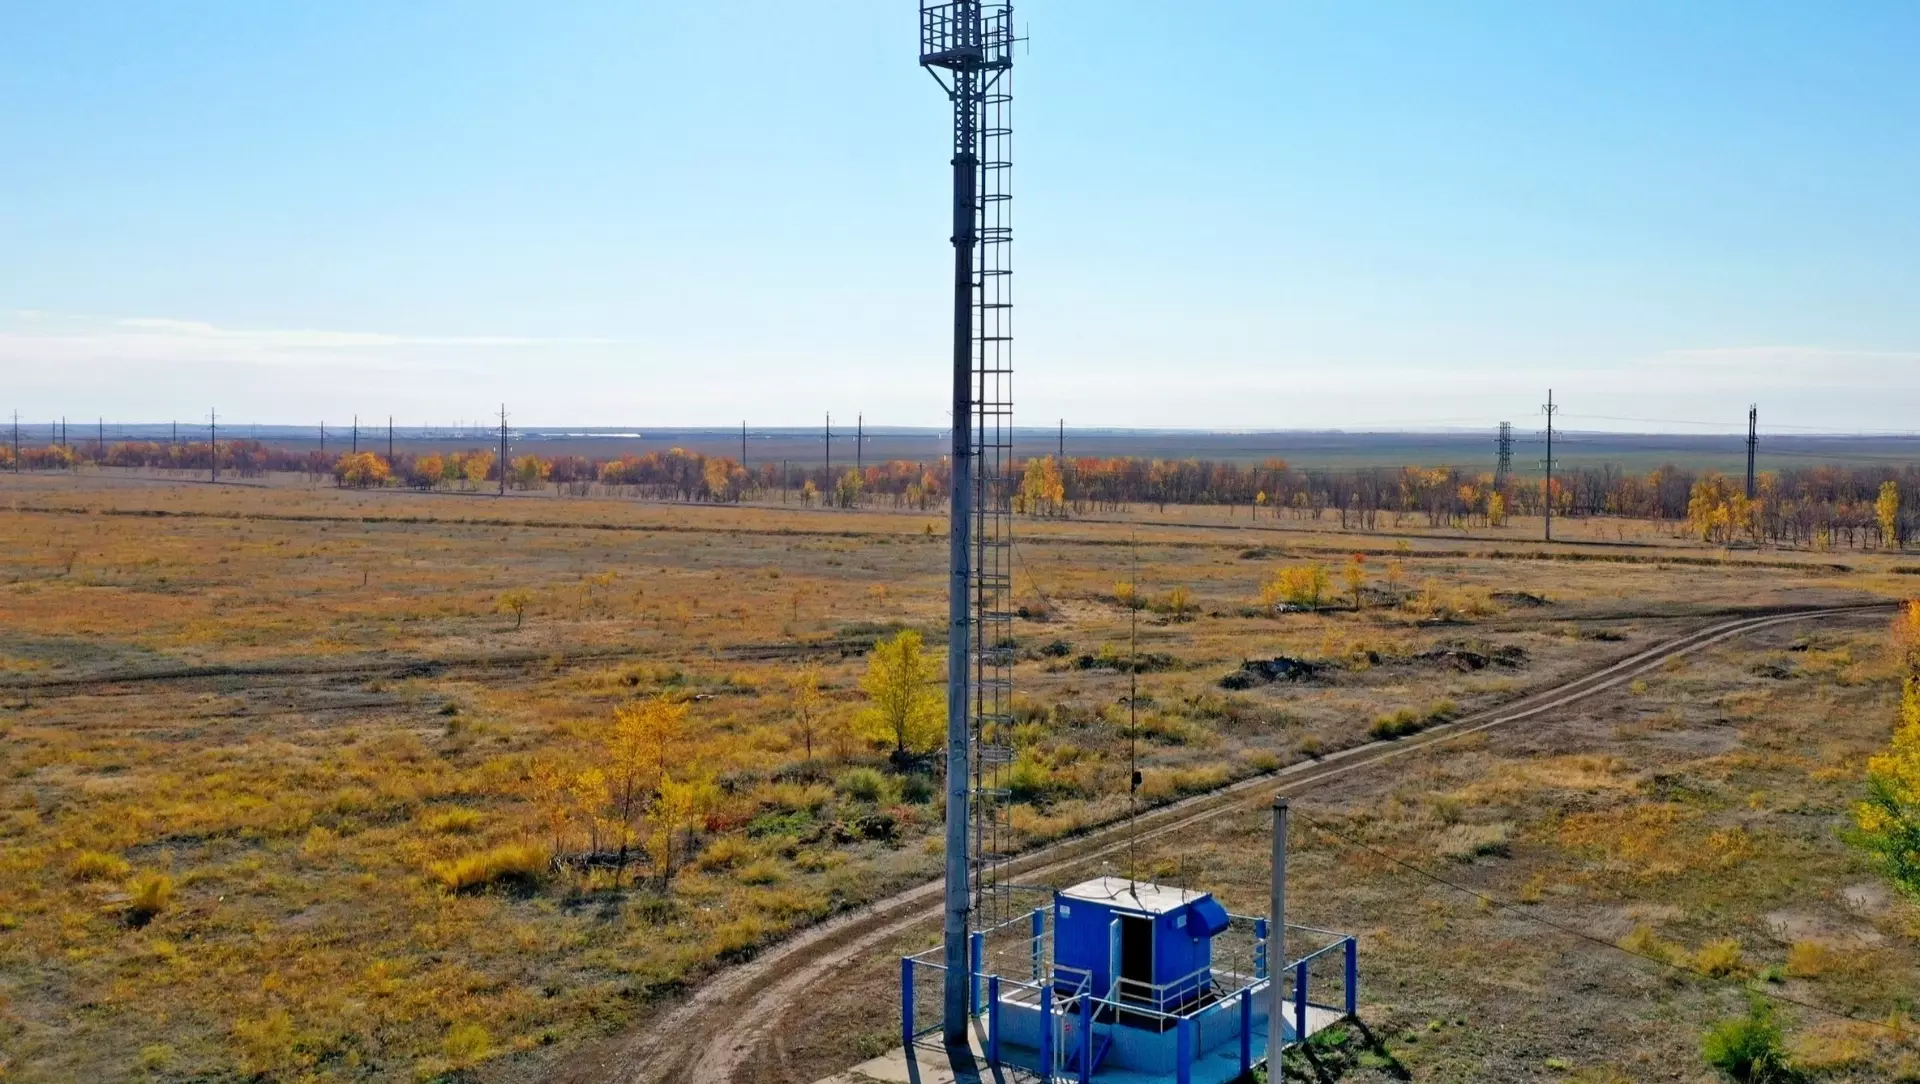 ООО «Газпром добыча Оренбург» реализует системный подход в вопросах экологии